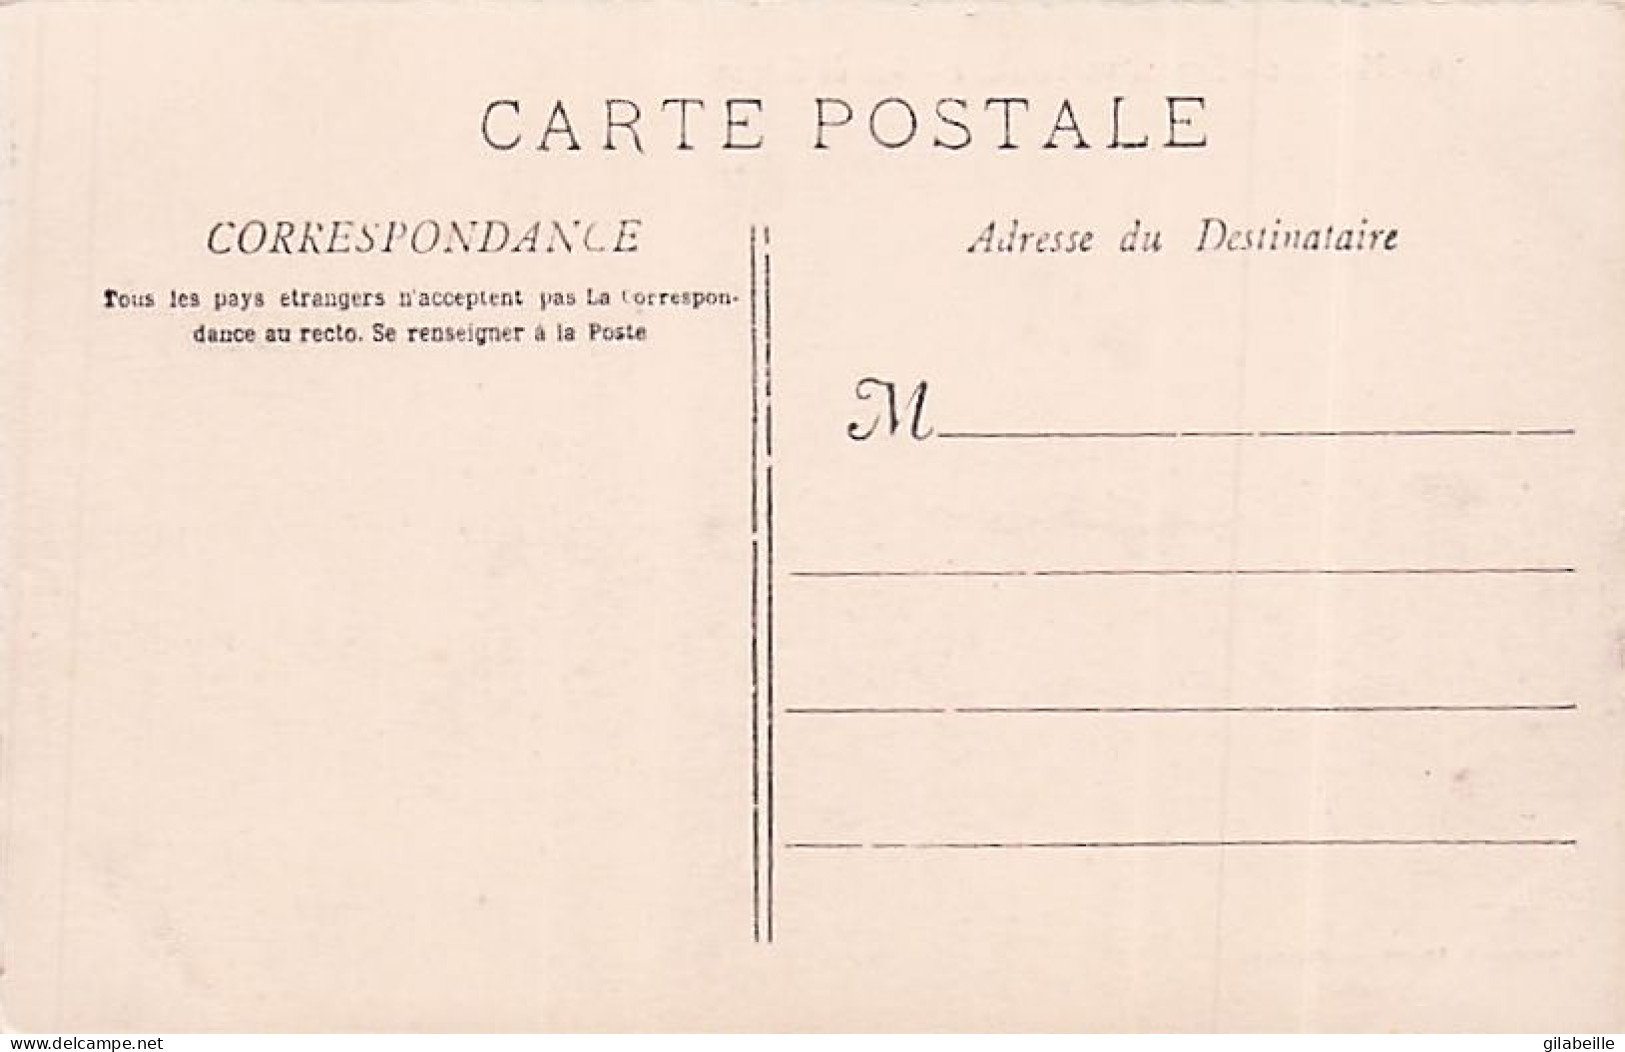 13 - MARSEILLE - Exposition Coloniale 1906 - Lot 8 Cartes - Parfait Etat - Colonial Exhibitions 1906 - 1922